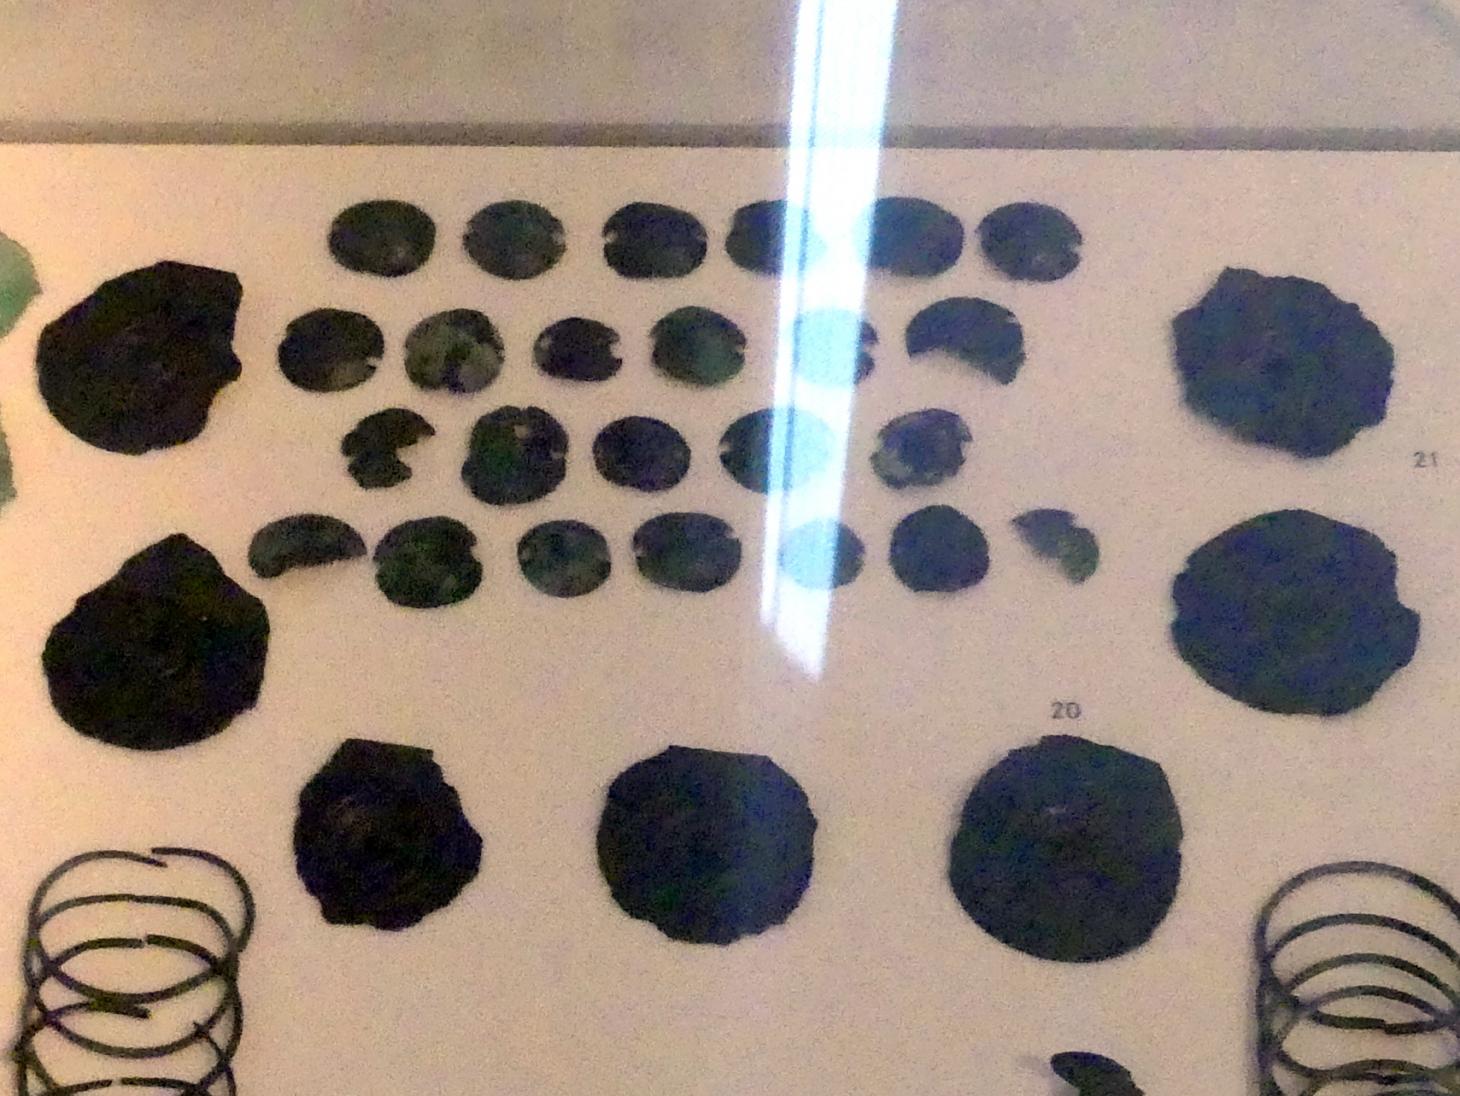 Stachelscheiben, Mittlere Bronzezeit, 3000 - 1300 v. Chr., 1600 - 1300 v. Chr., Bild 1/2